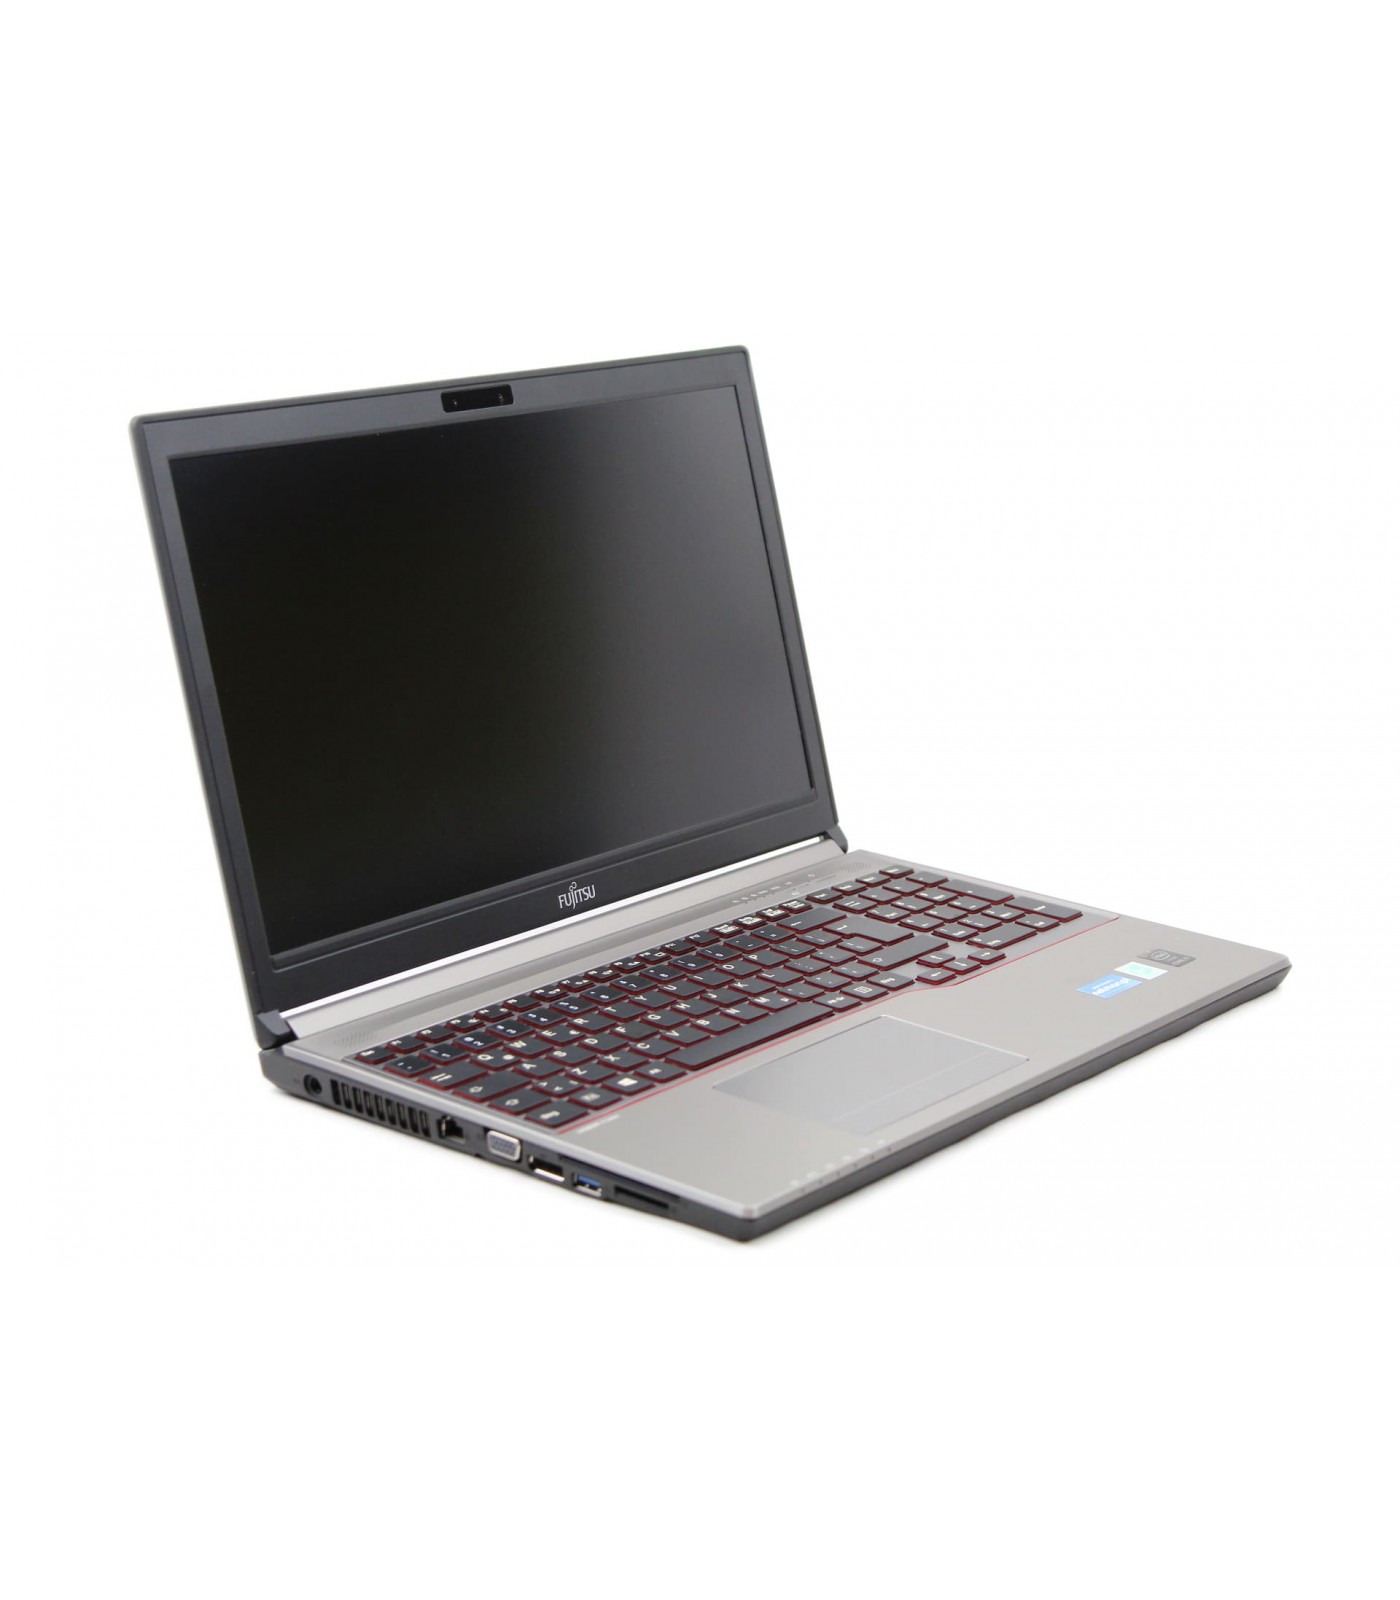 Poleasingowy laptop Fujitsu Lifebook E754 z procesorem intel i5 w klasie A